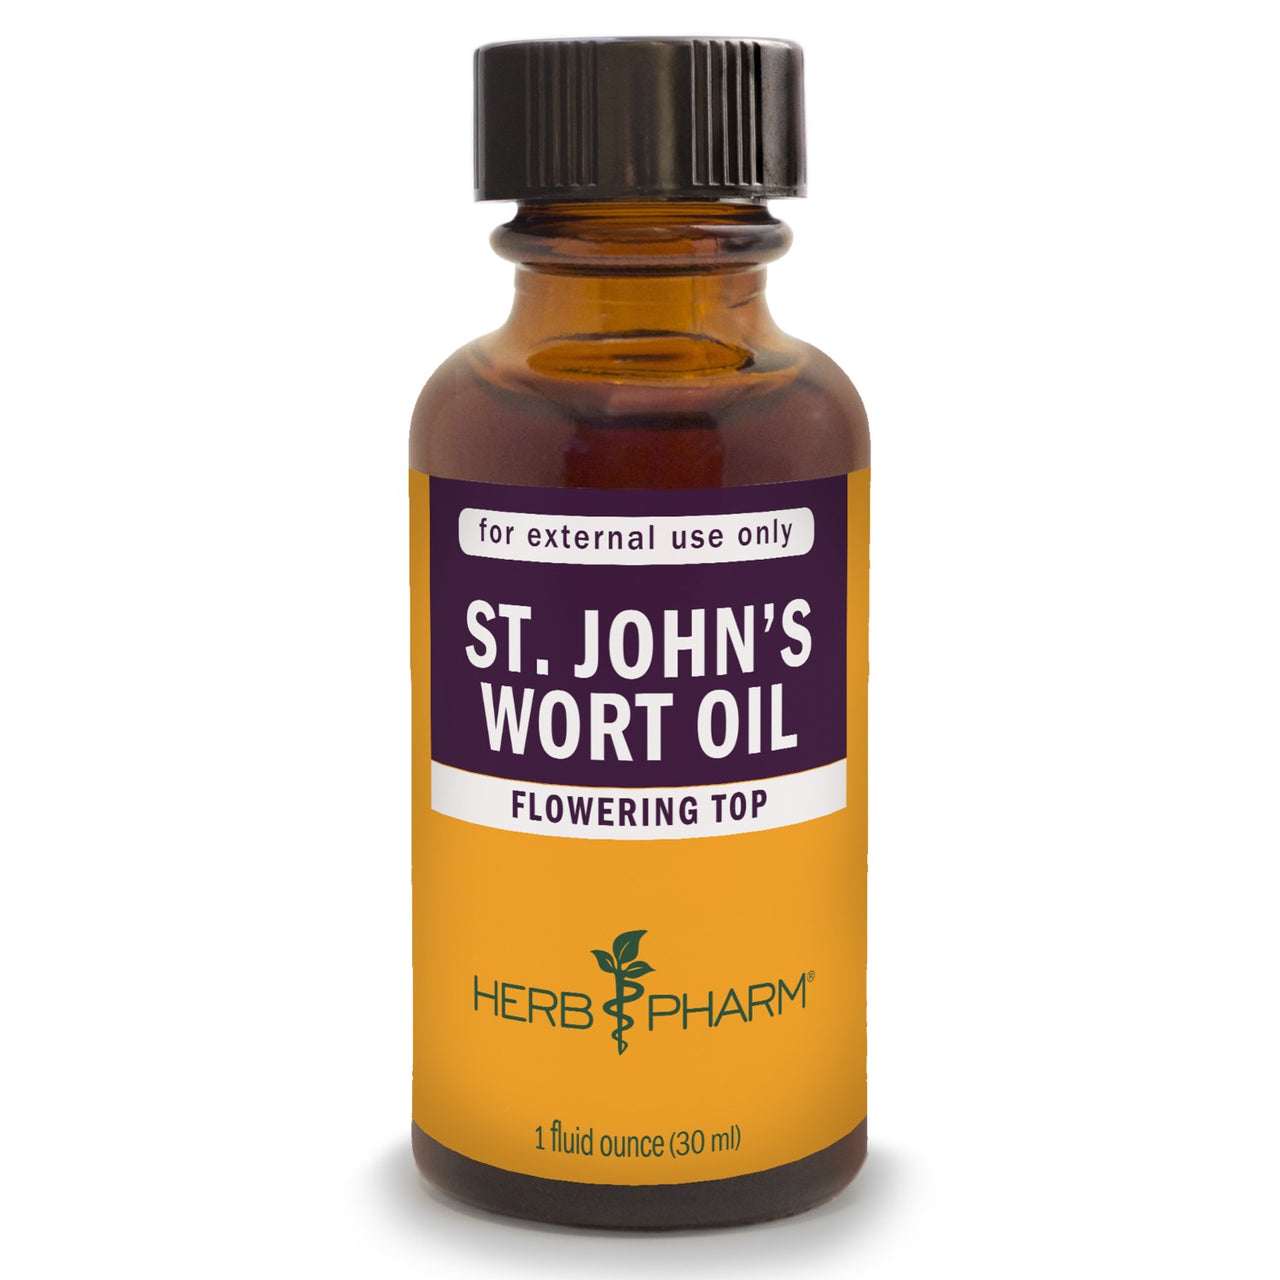 St. John’s Wort Oil - My Village Green